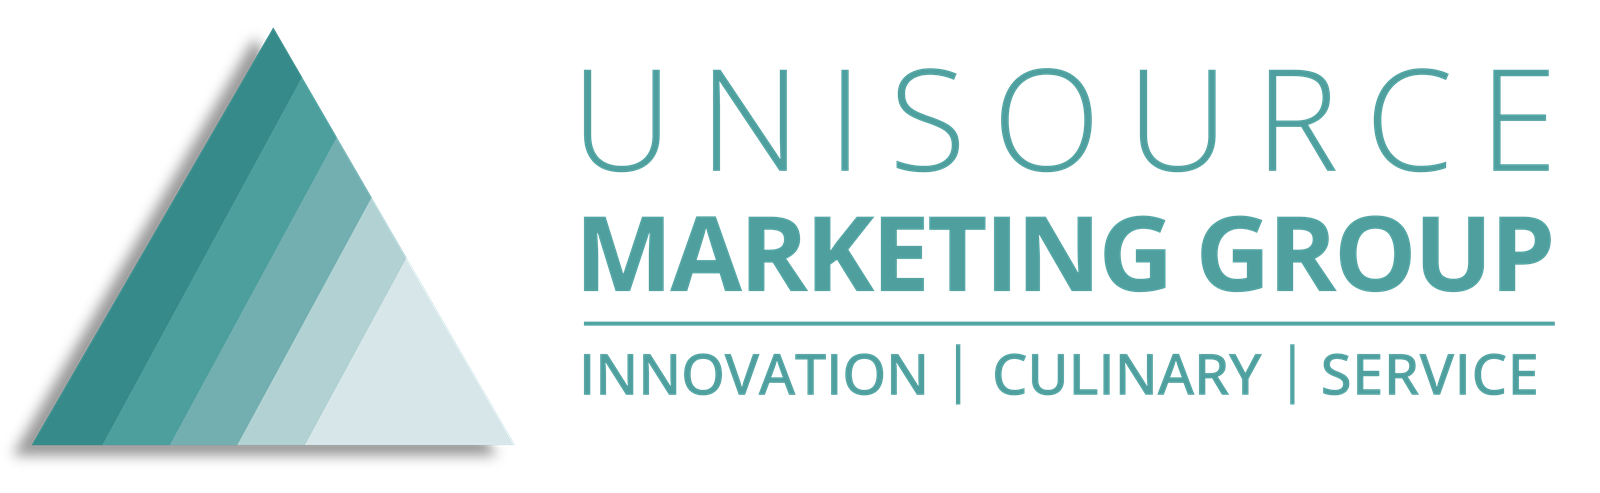 Unisource Marketing Group logo